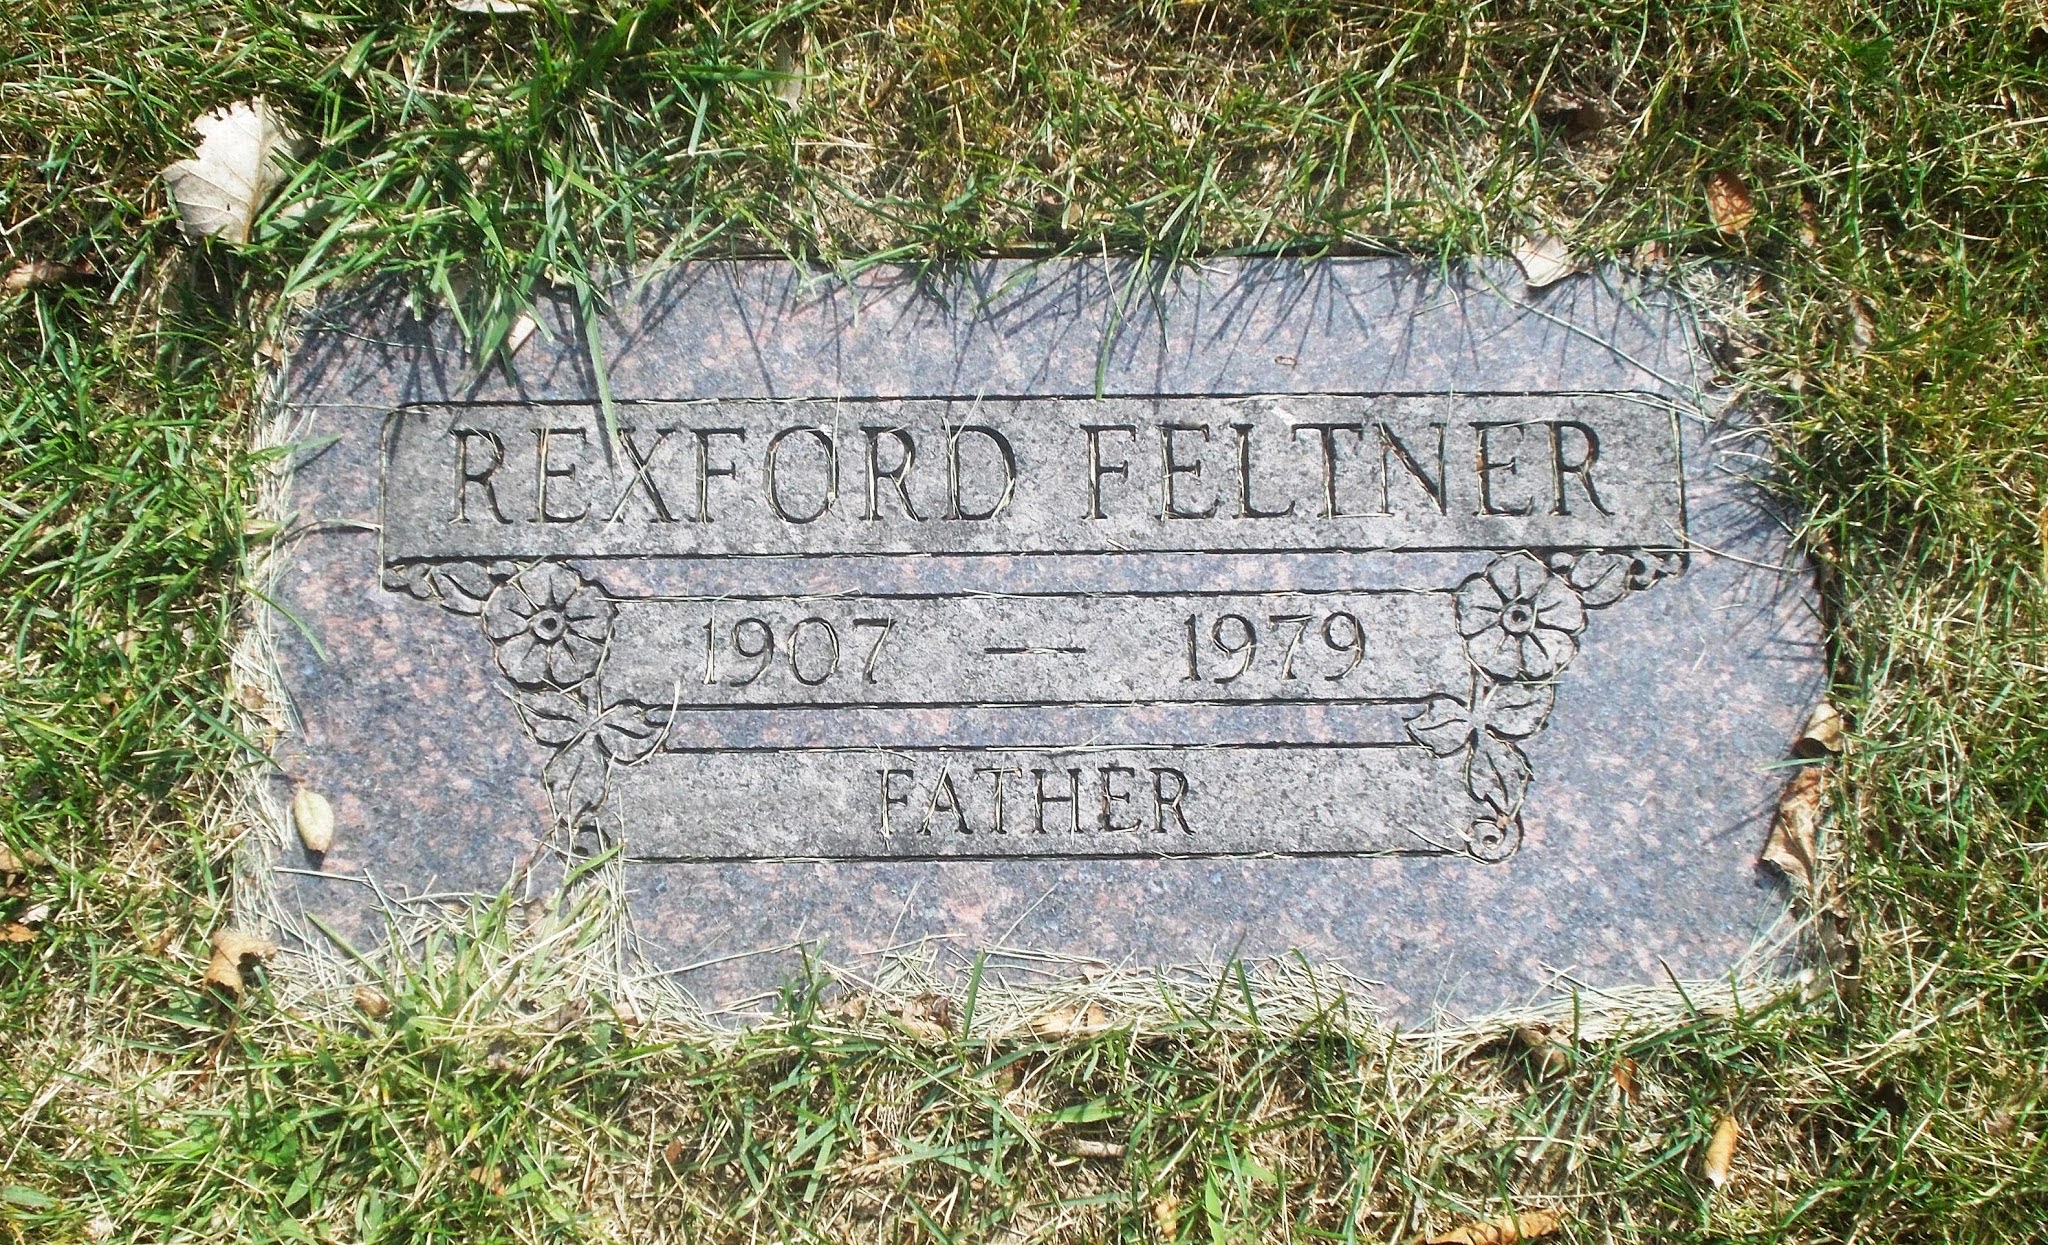 Rexford Feltner